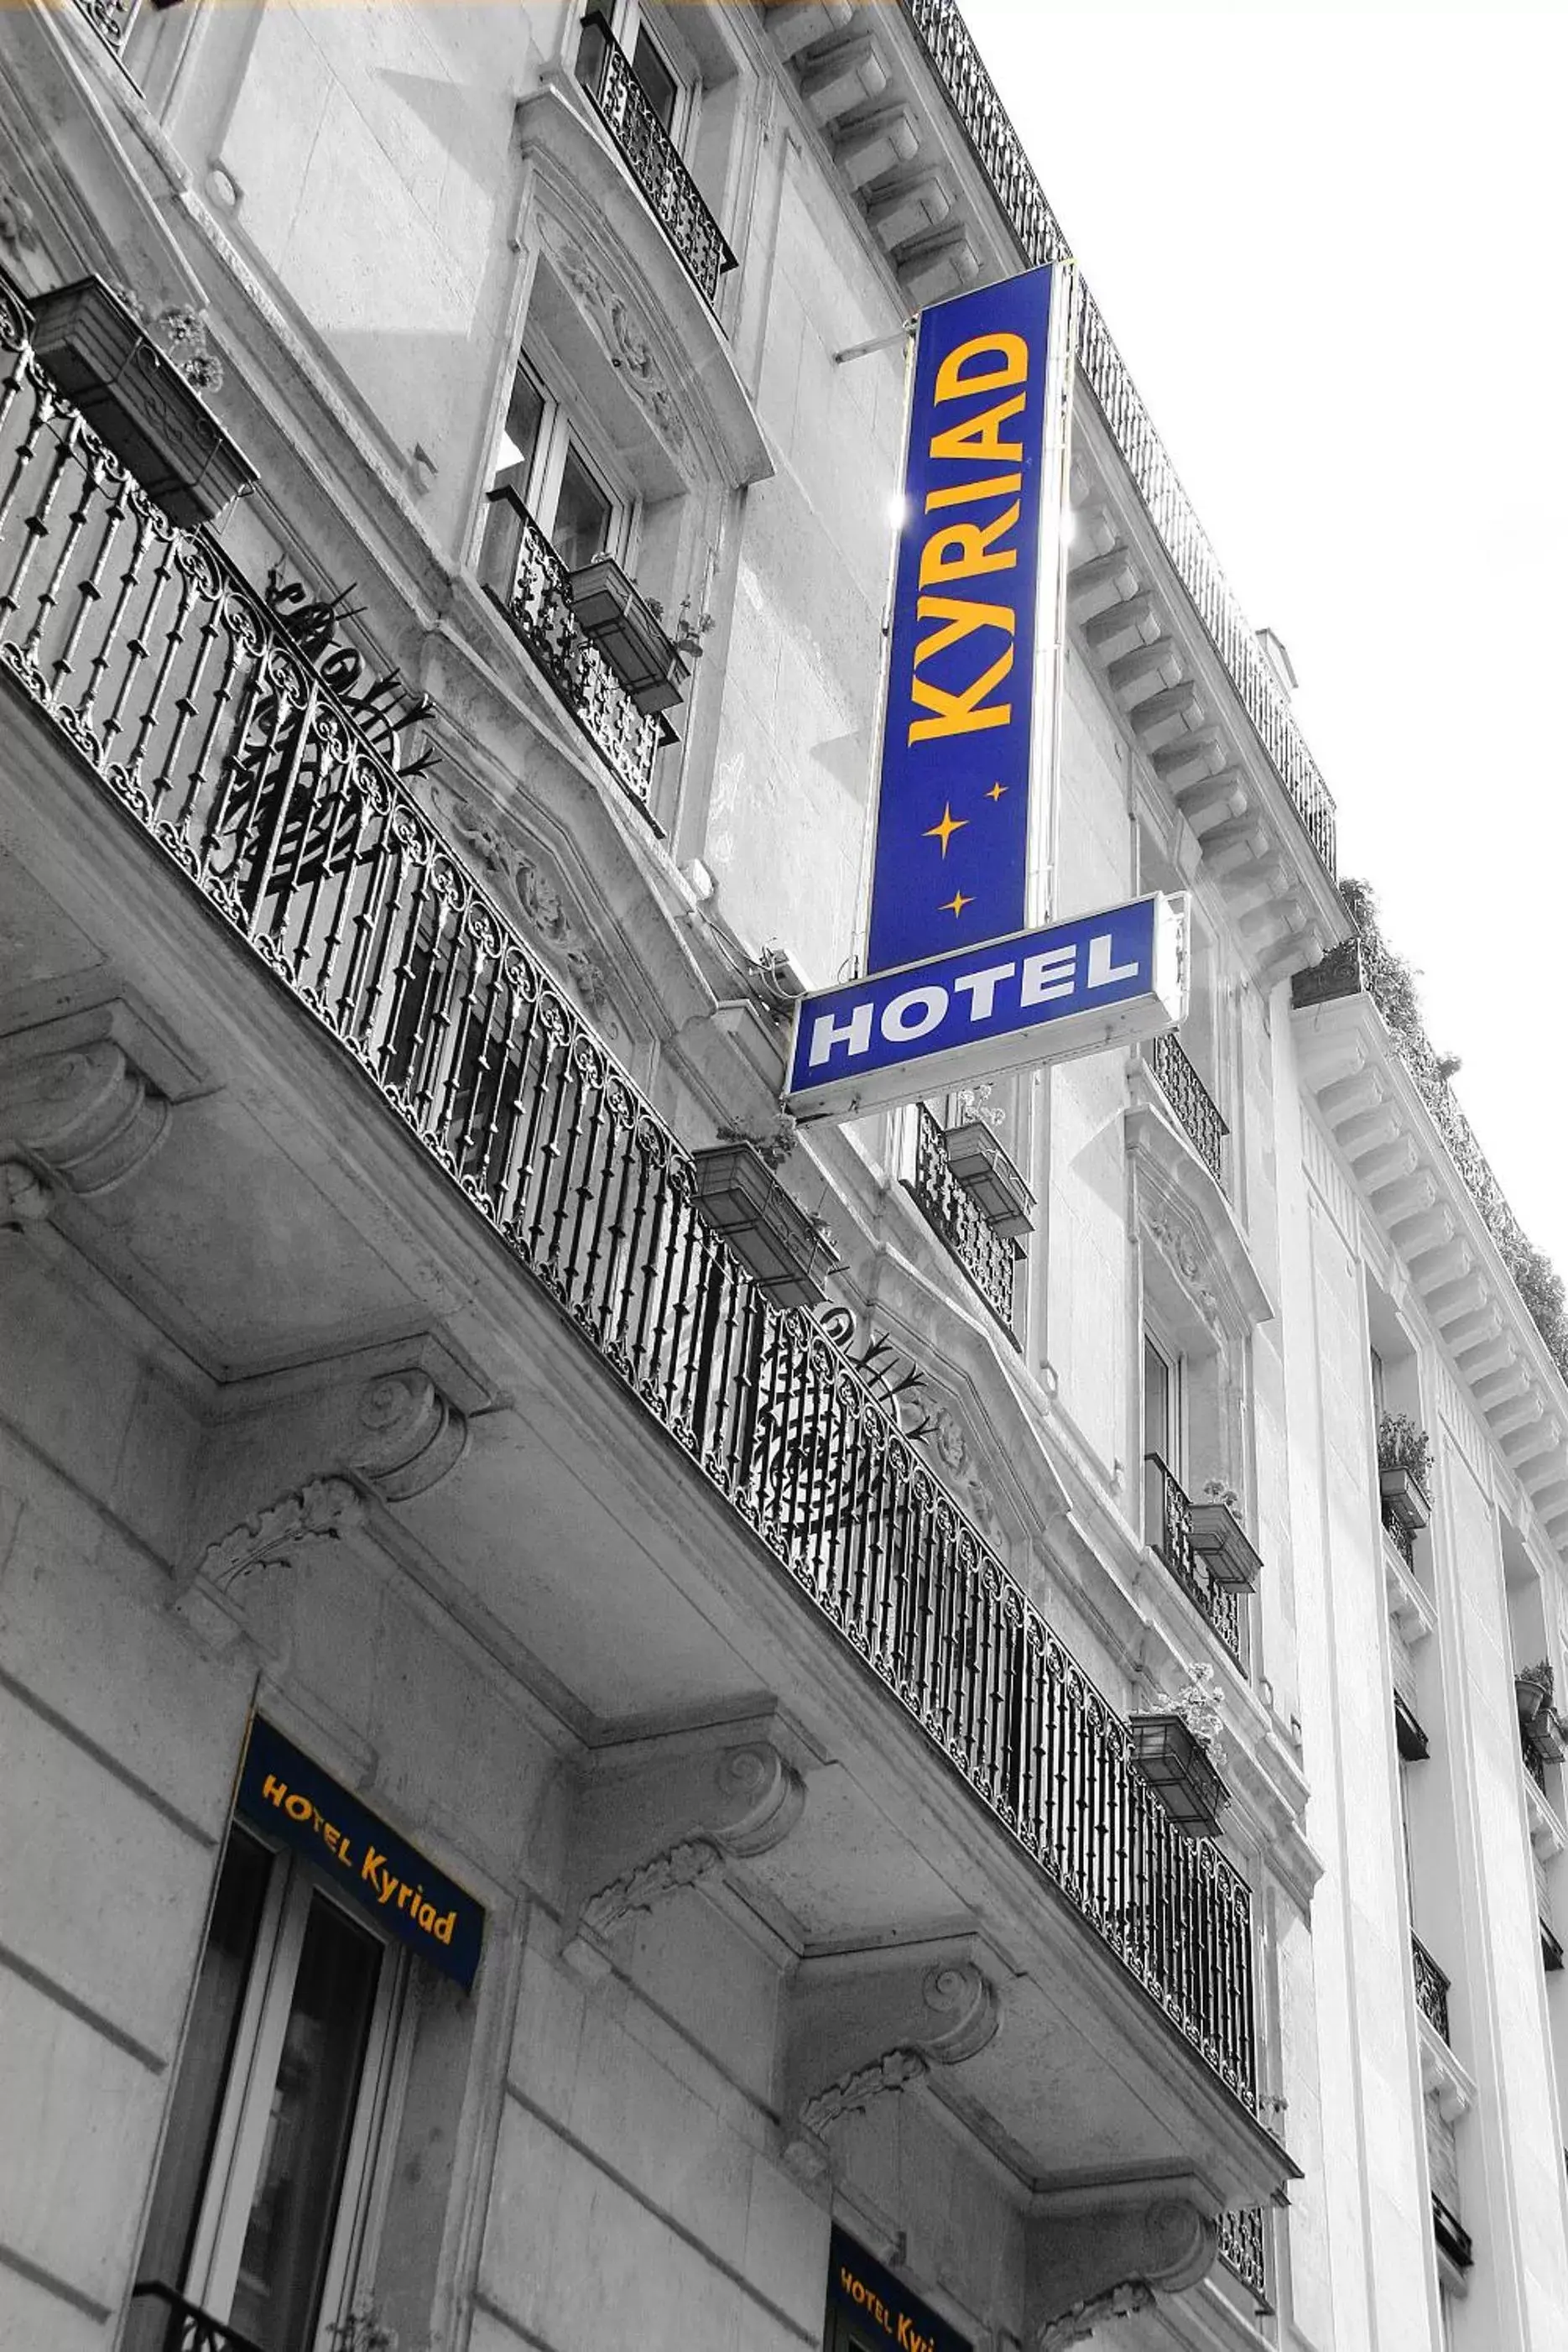 Facade/entrance in Kyriad Hotel XIII Italie Gobelins